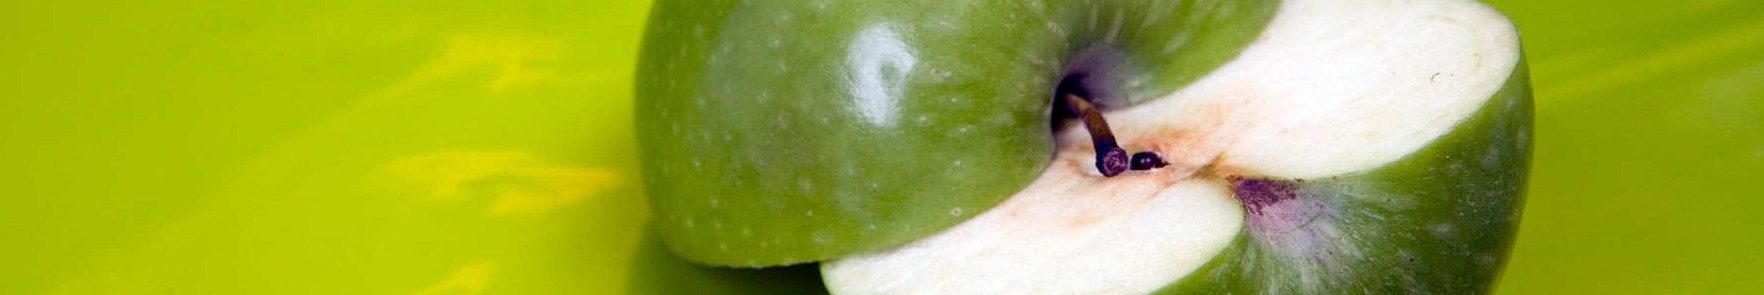 Imagen de manzana verde cortada a la mitad sobre fondo verde